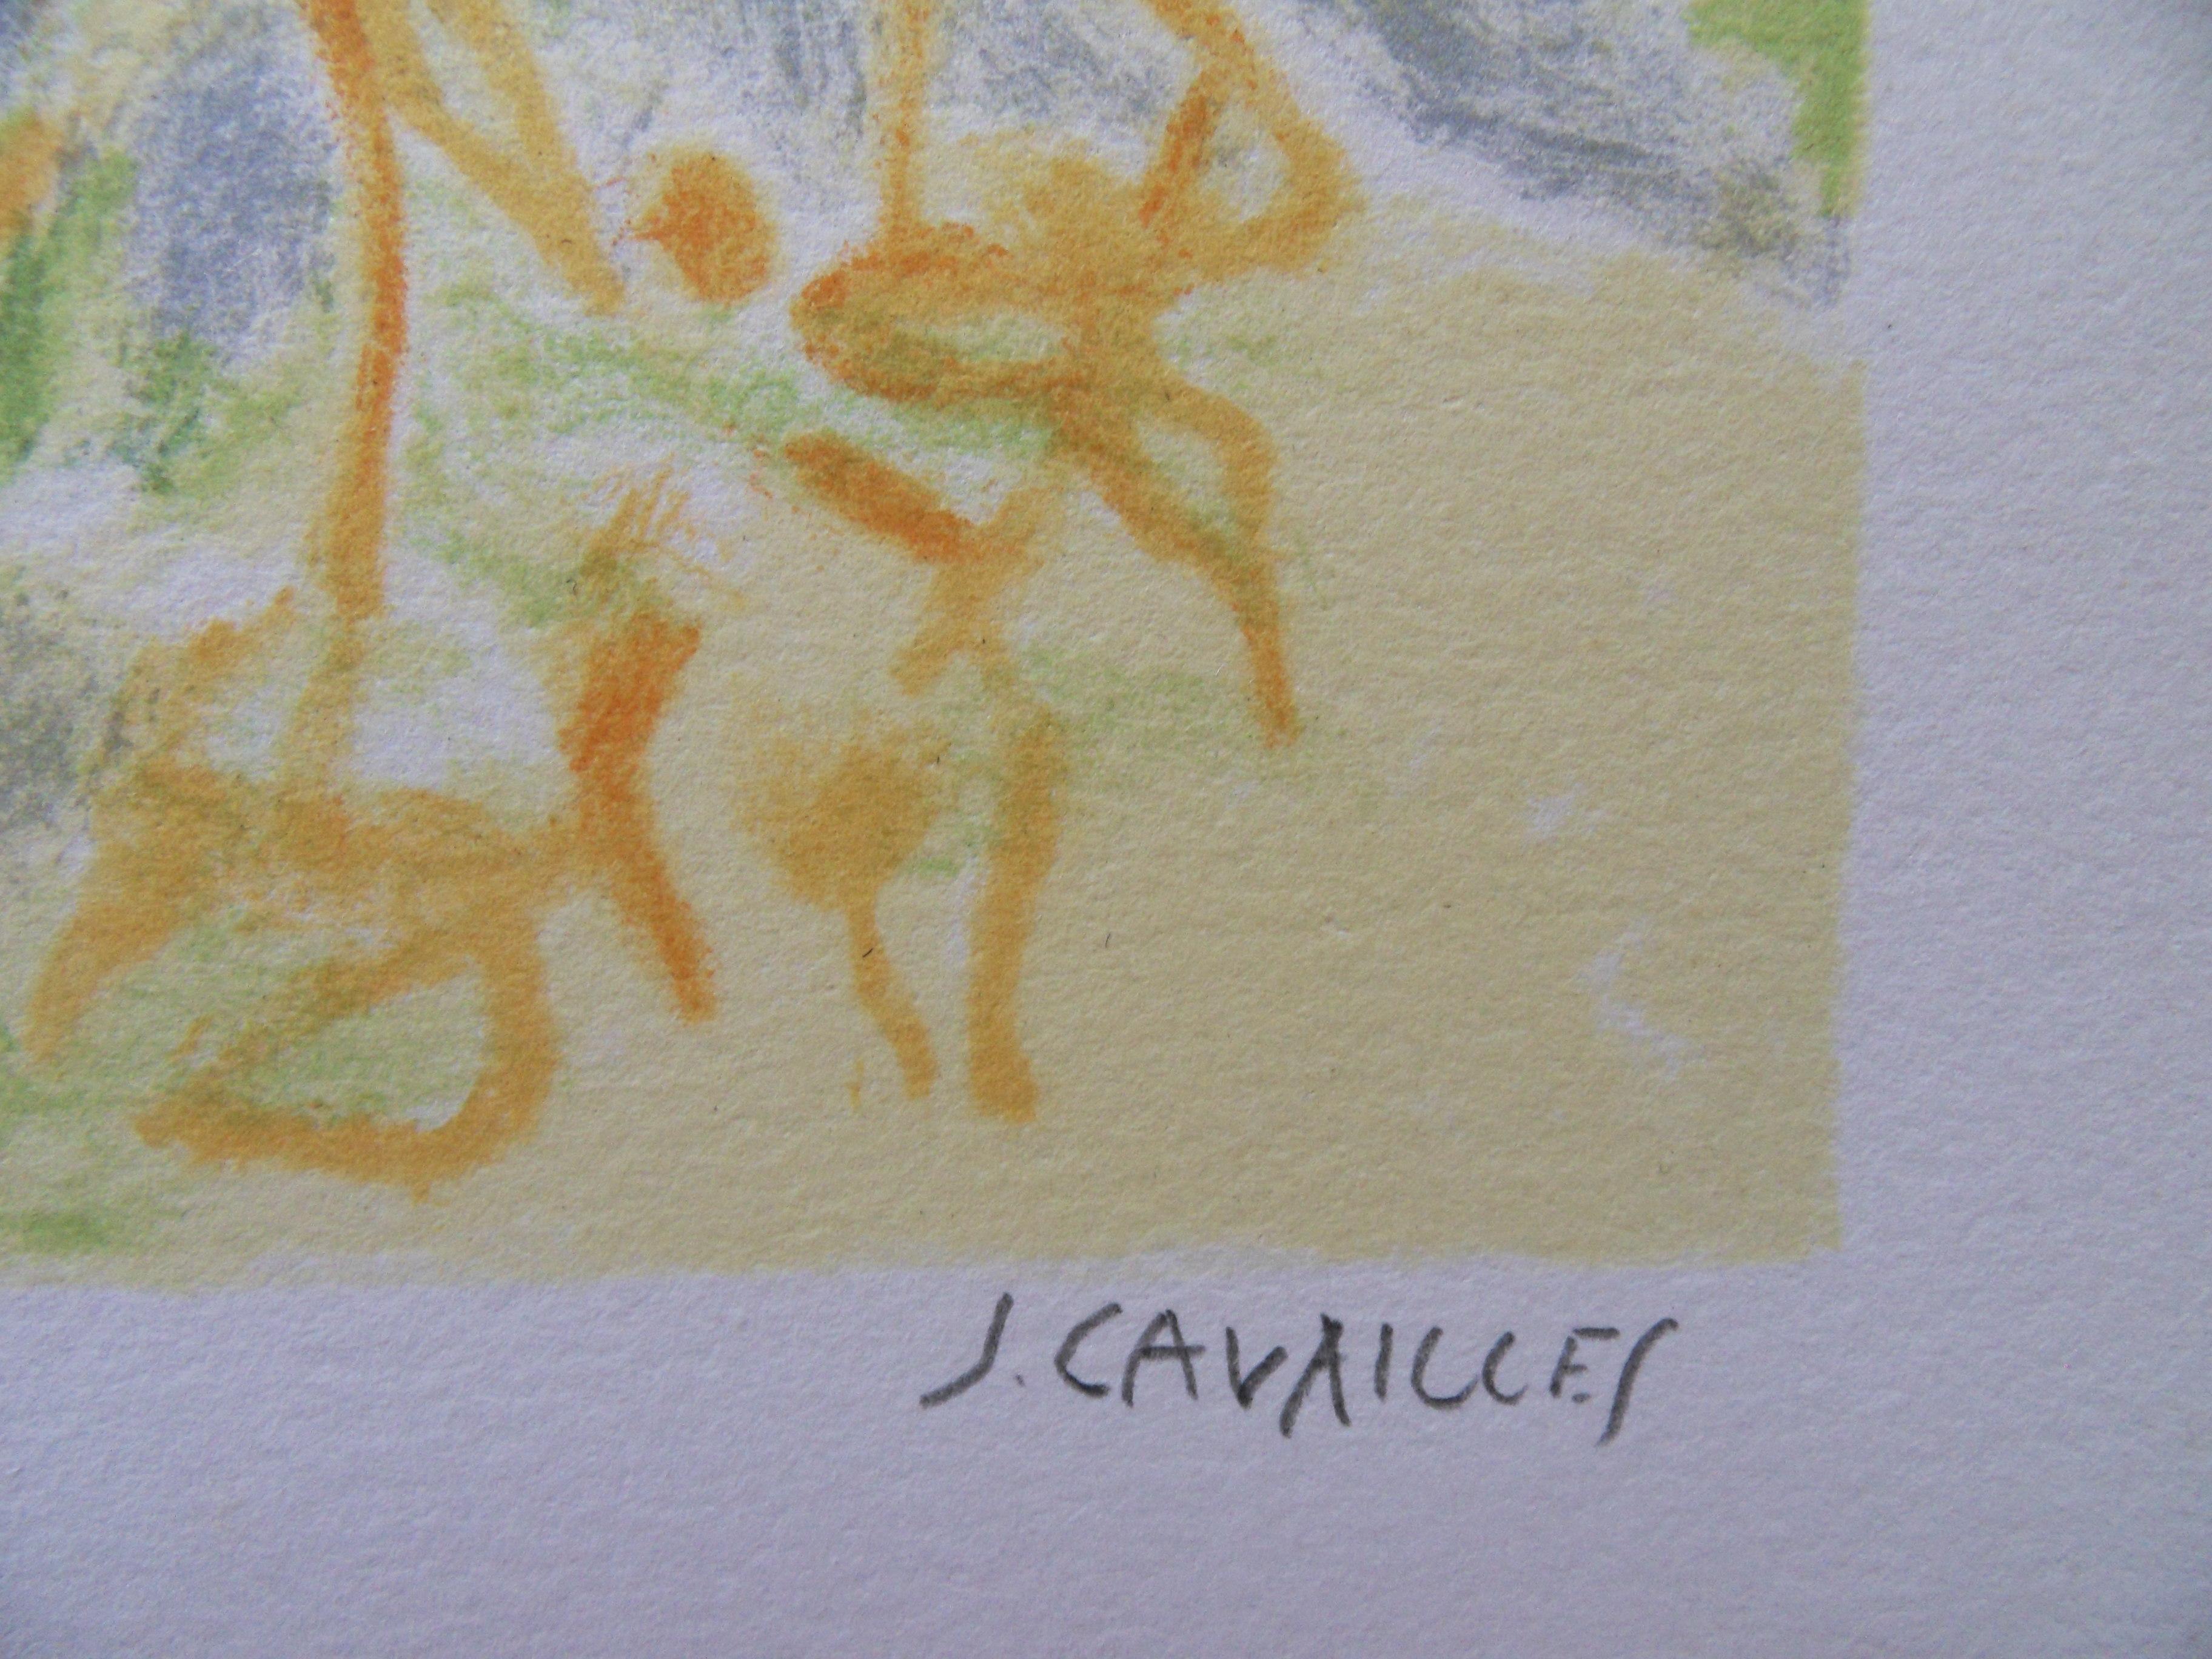 Jules CAVAILLES
Paysage en Provence : La Vieille Maison 

Lithographie originale
Signé à la main au crayon
Sur vélin 33 x 50 cm (c. 13 x 20 inch)

Excellent état